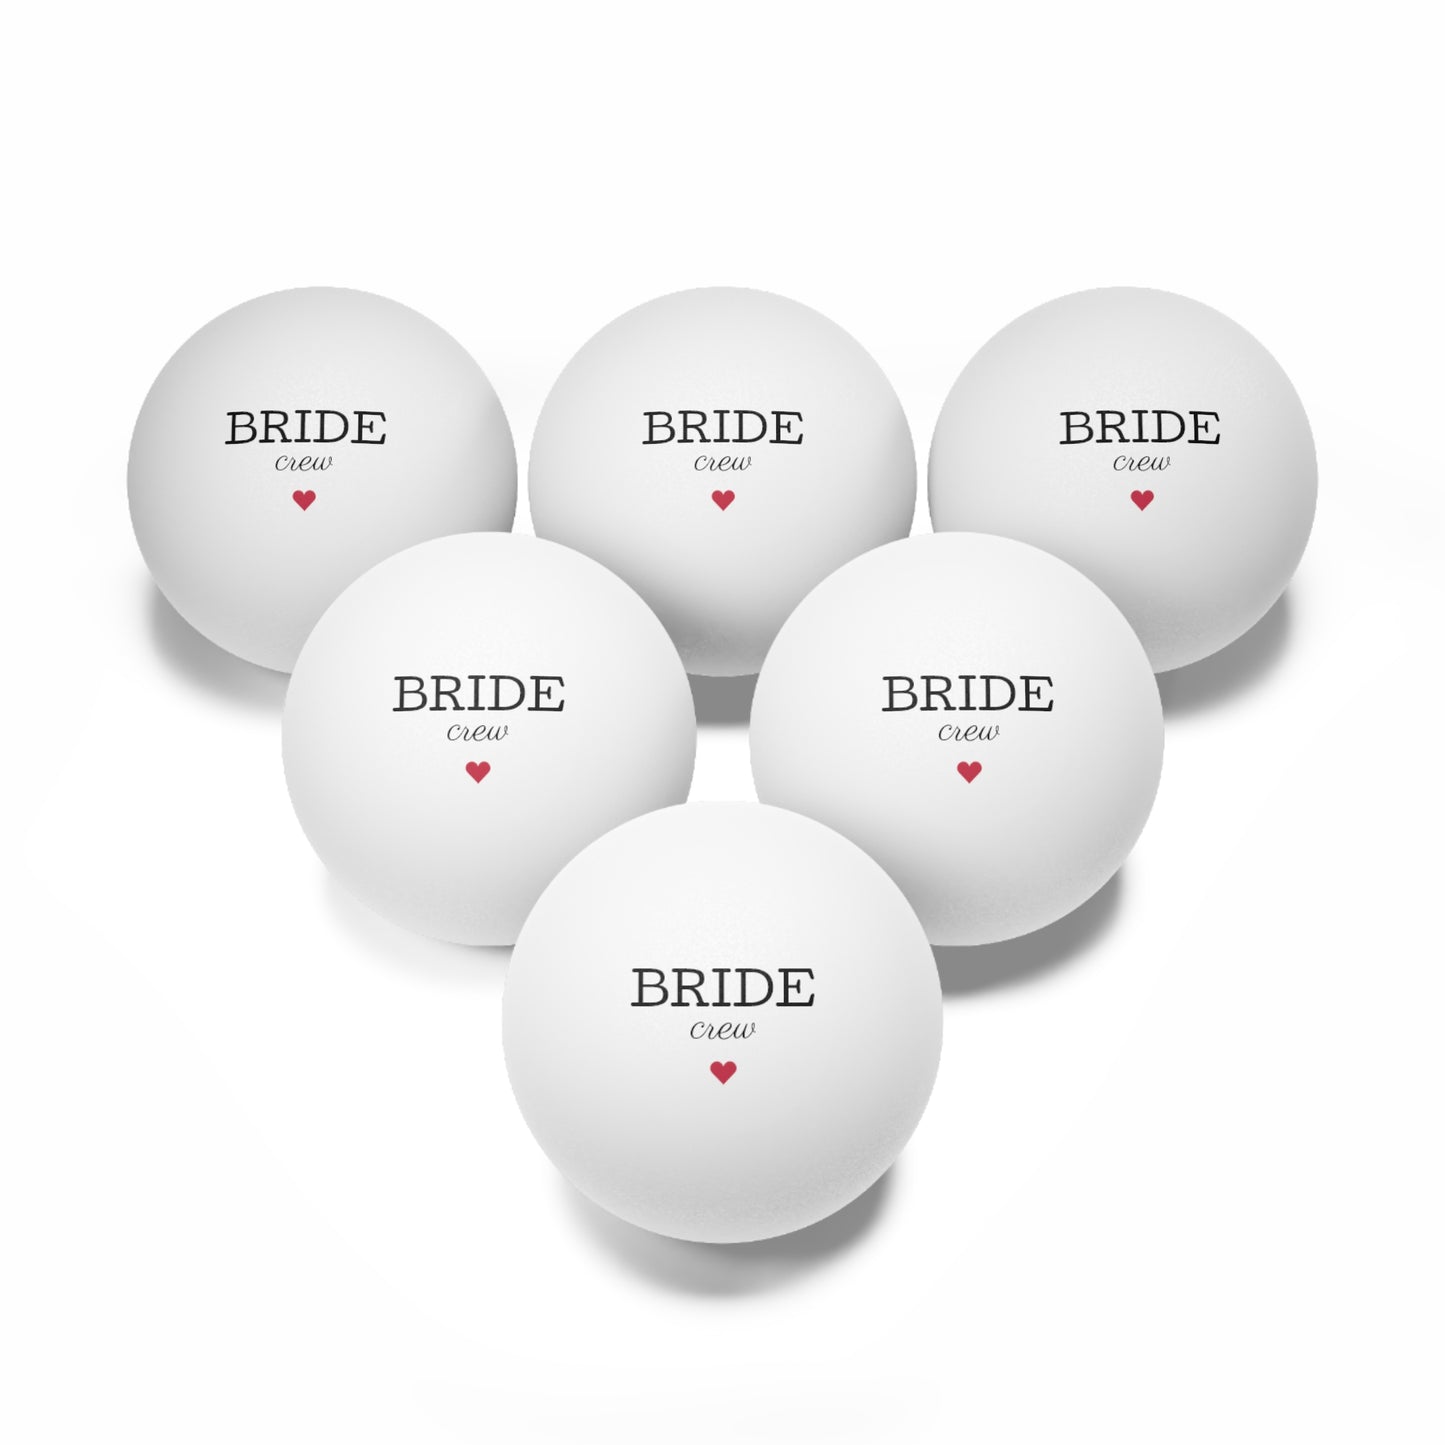 Bride Crew Ping Pong Balls, 6 pcs